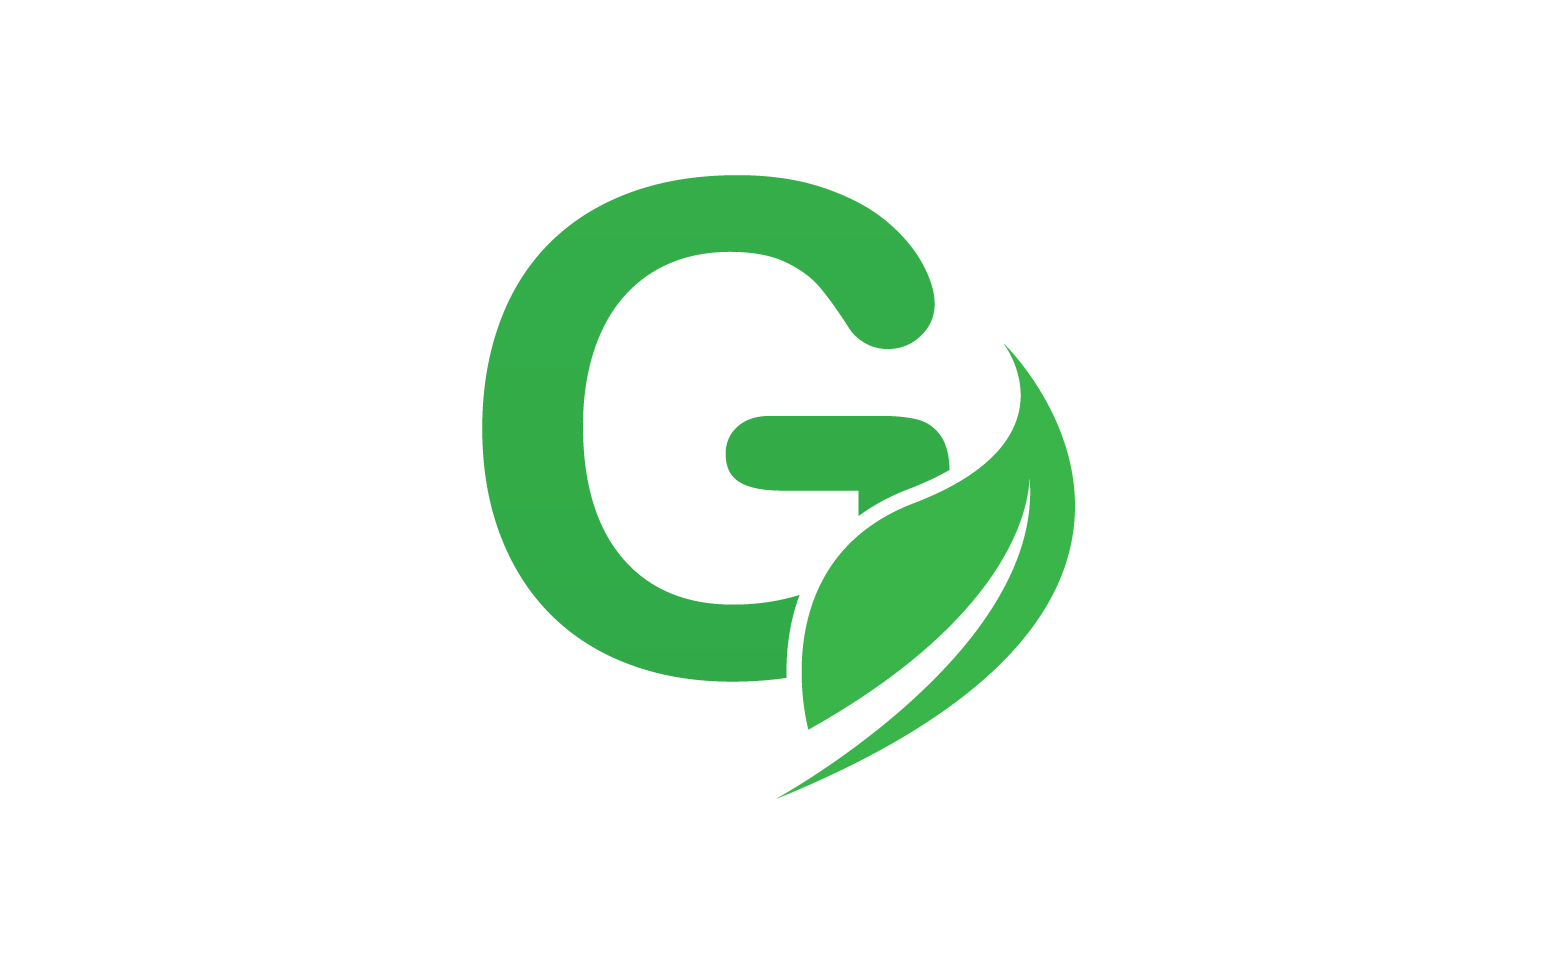 G letter leaf green logo icon version v35